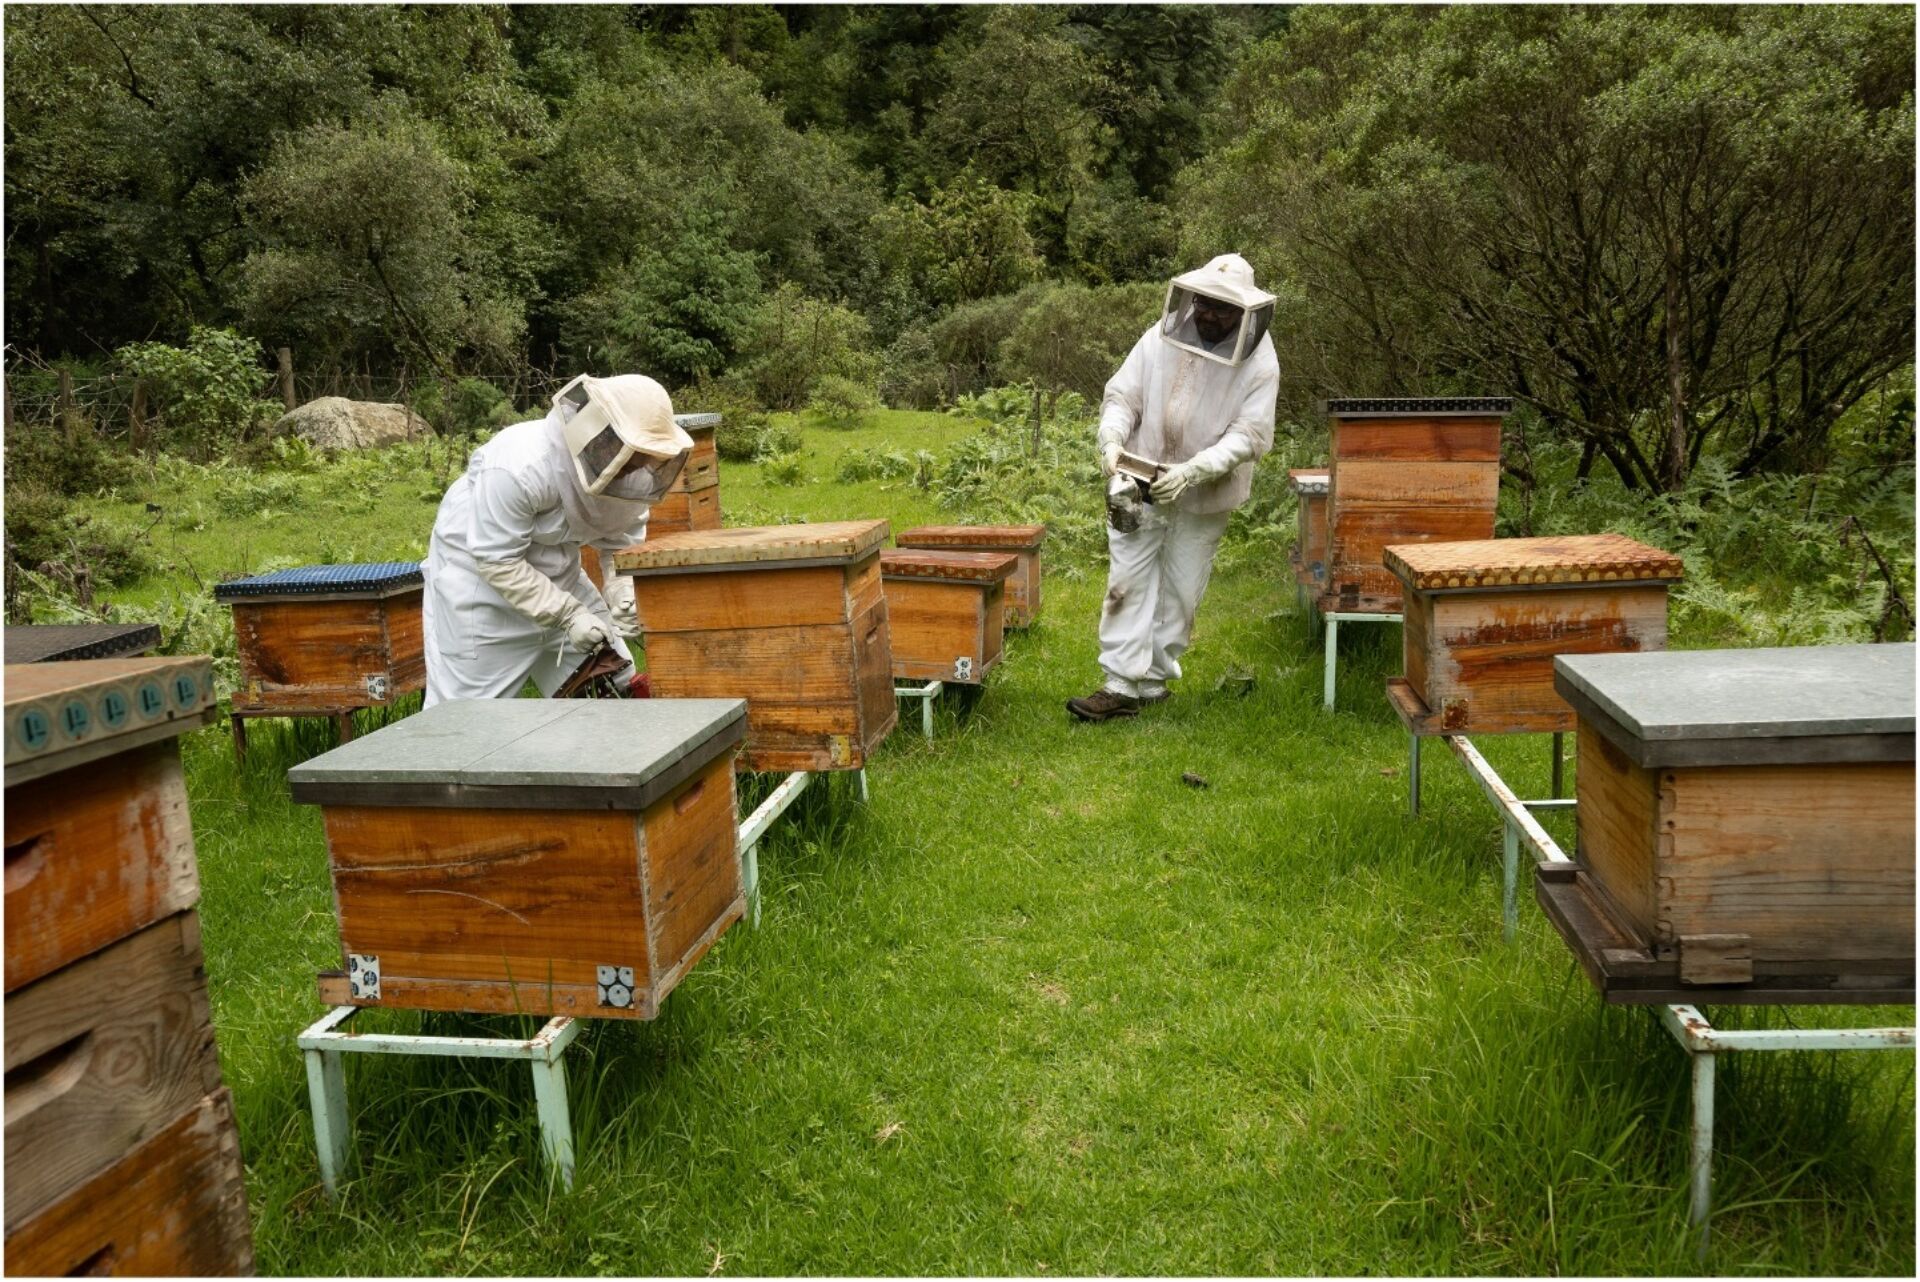 Beekeepers tending to apiaries